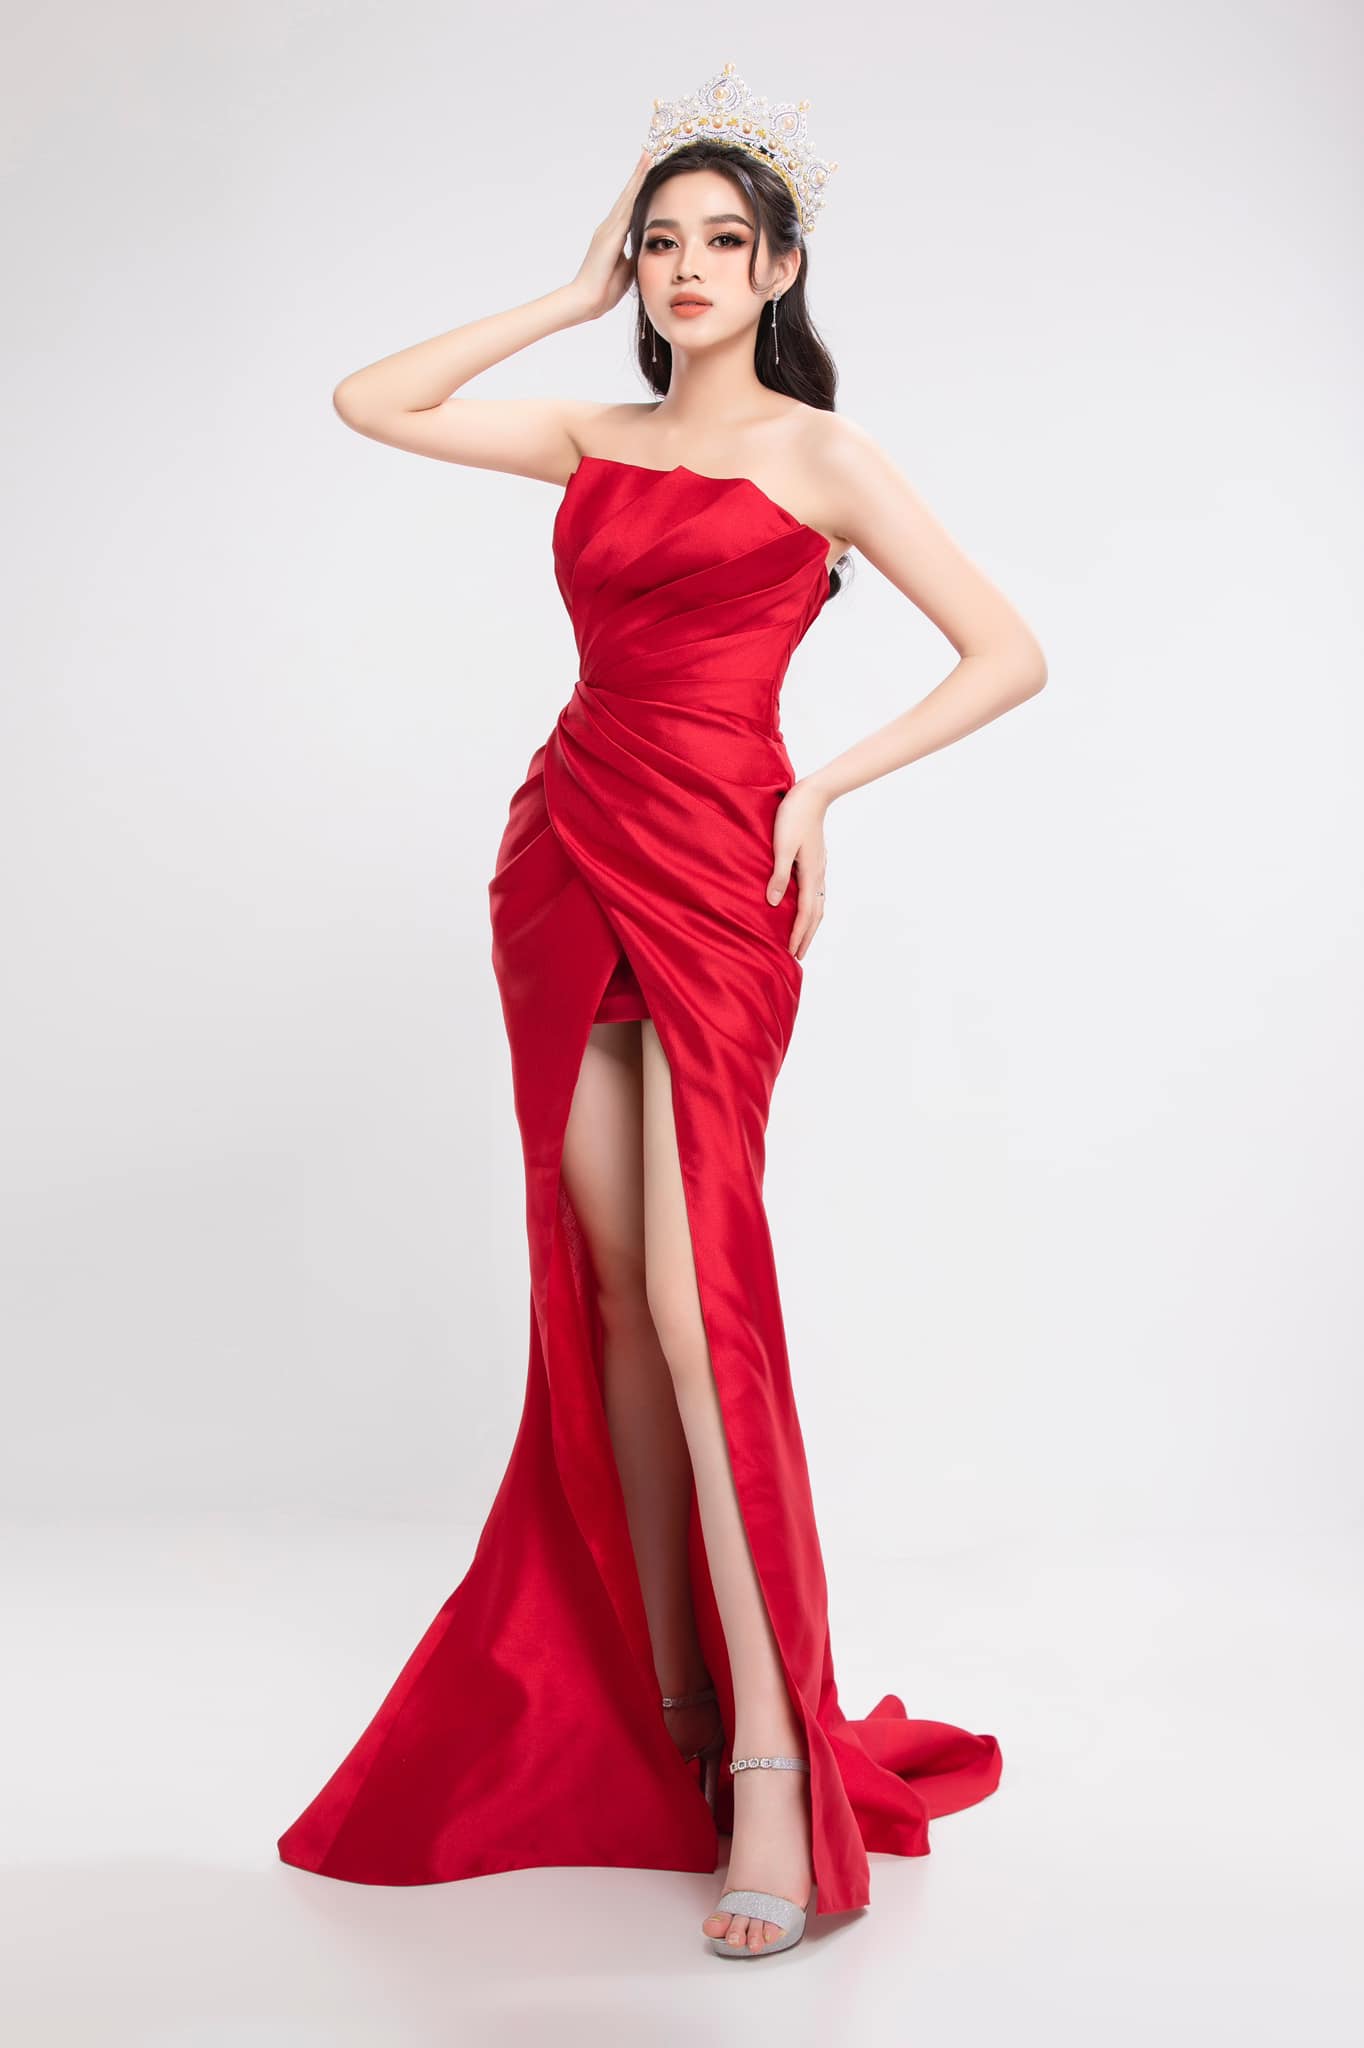 Trước đó, Hoa hậu Đỗ Hà cũng được chuyên trang sắc đẹp quốc tế Missosology đánh giá nằm trong top 7 ứng cử viên tiềm năng.